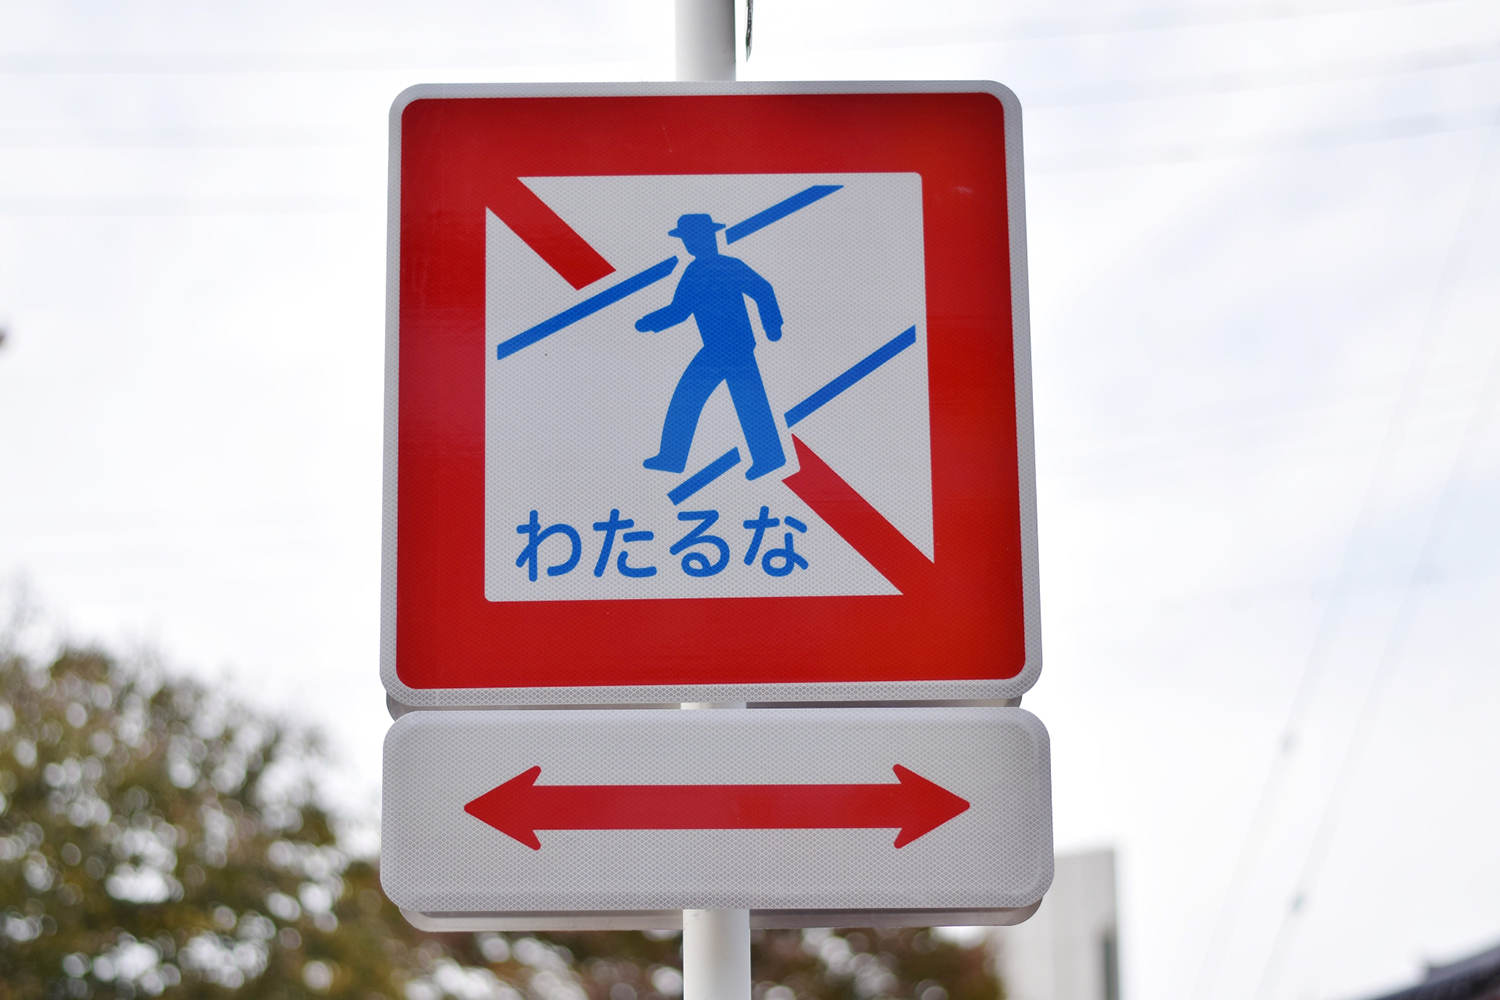 最近「横断禁止」に代わって「わたるな」と書かれた標識が増えている理由